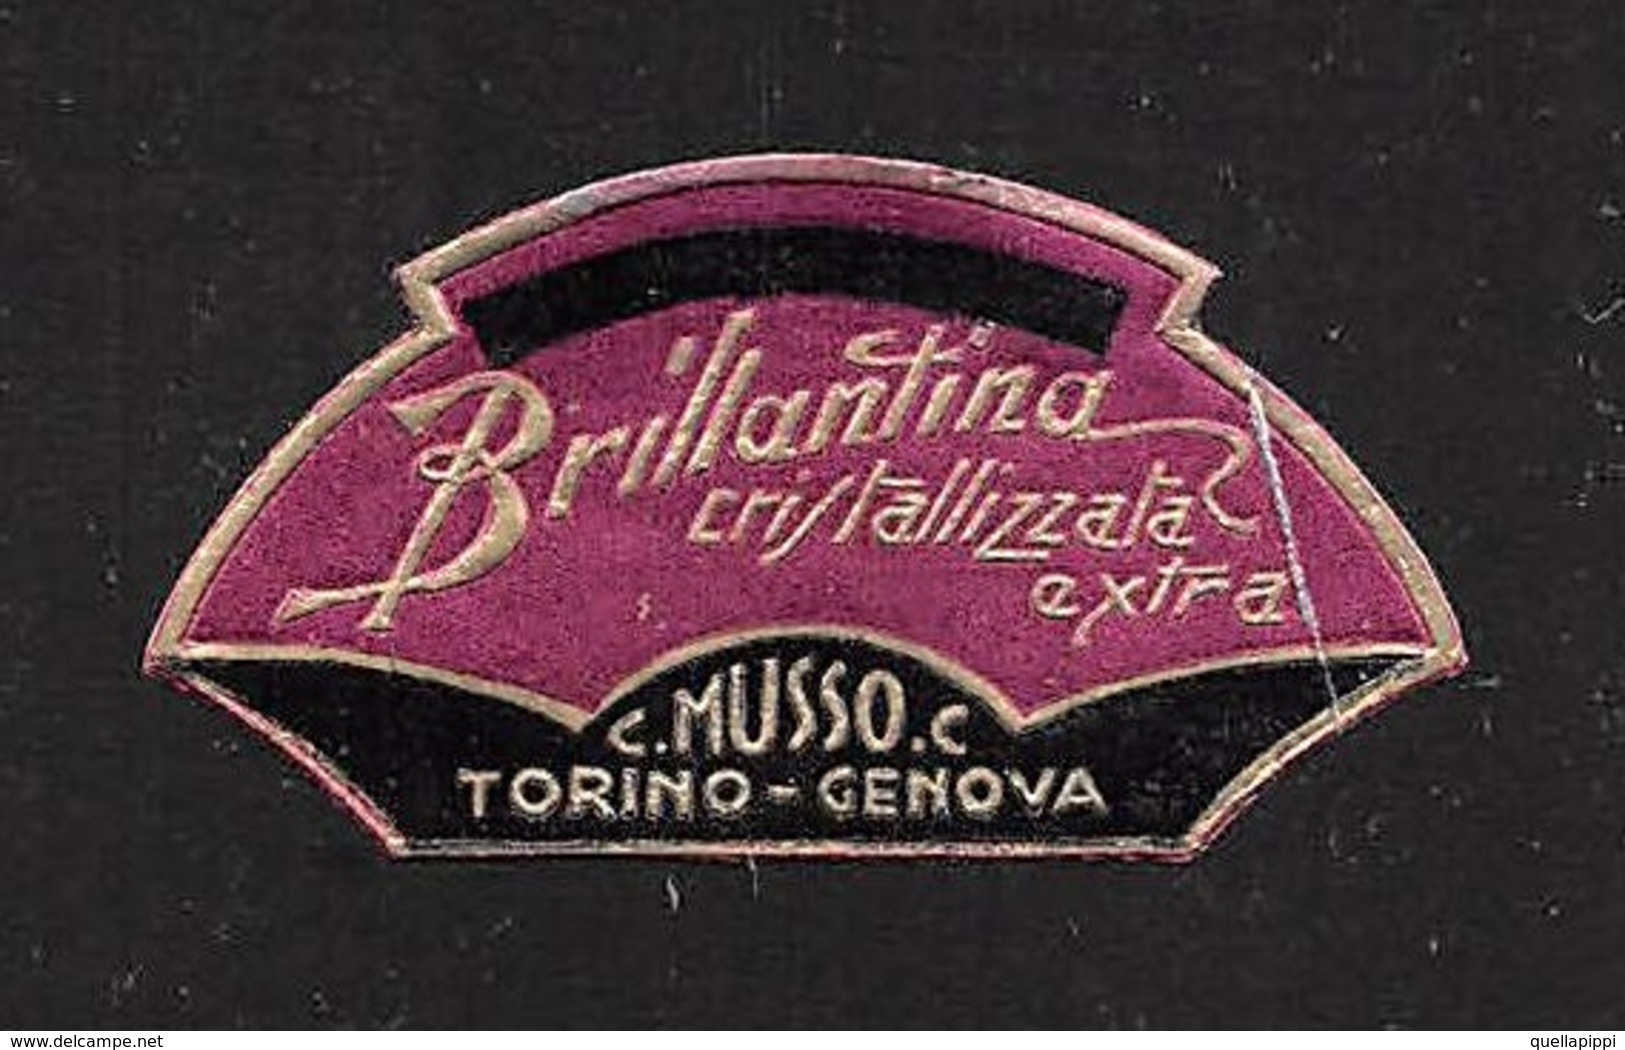 07667 "BRILLANTINA CRISTALLIZZATA EXTRA - C. MUSSO C. - TORINO-GENOVA - 1920 CIRCA" ETICHETTA  ORIGINALE - Labels